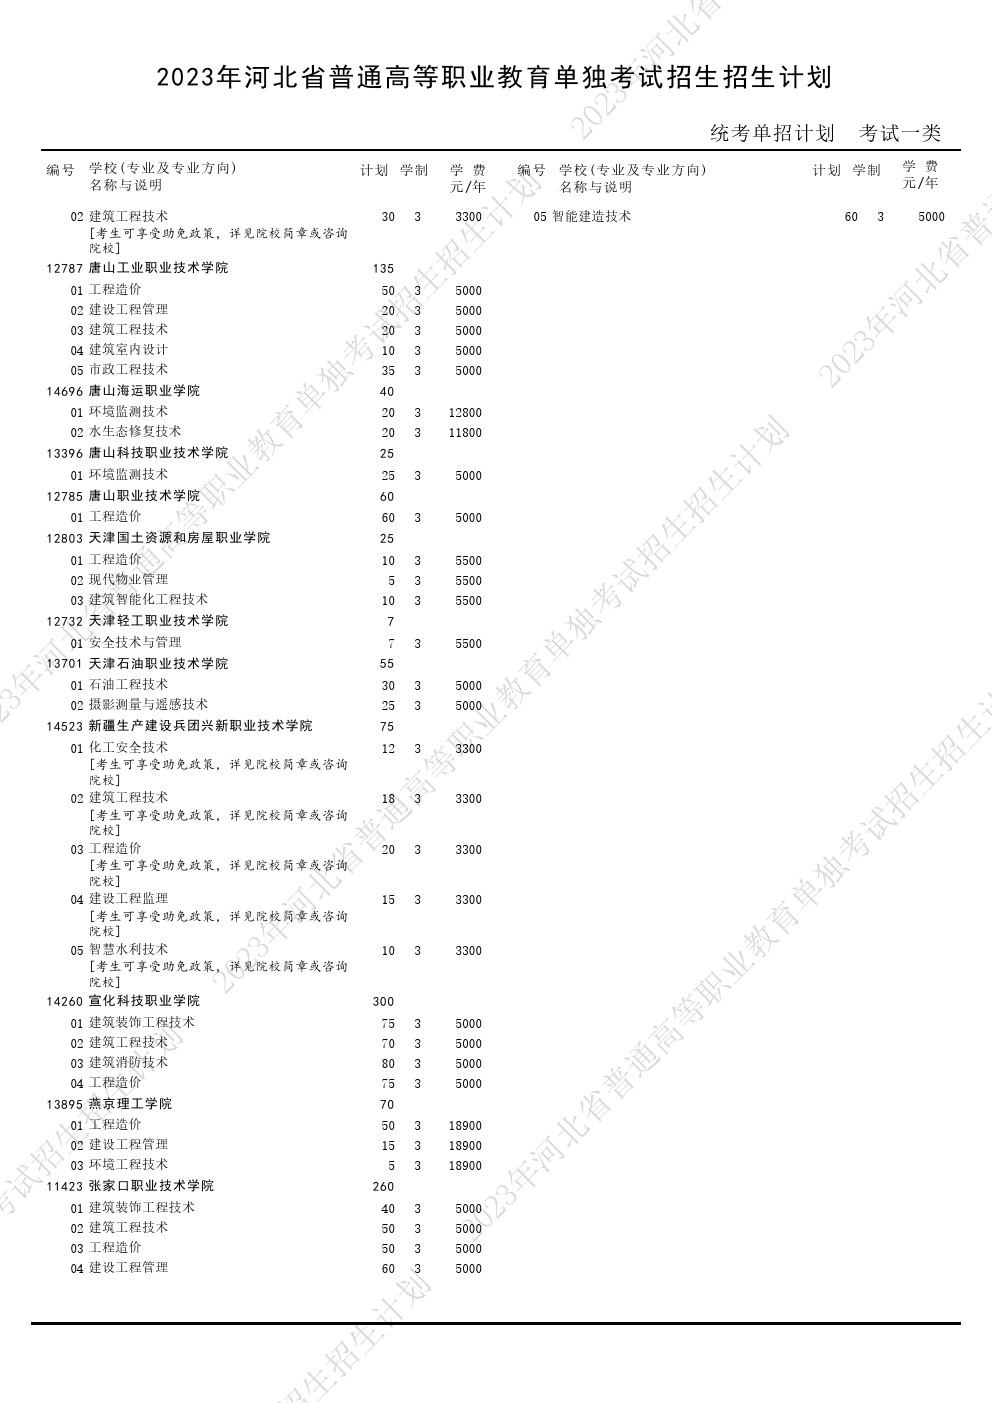 2023年河北省高职单招考试一类招生计划